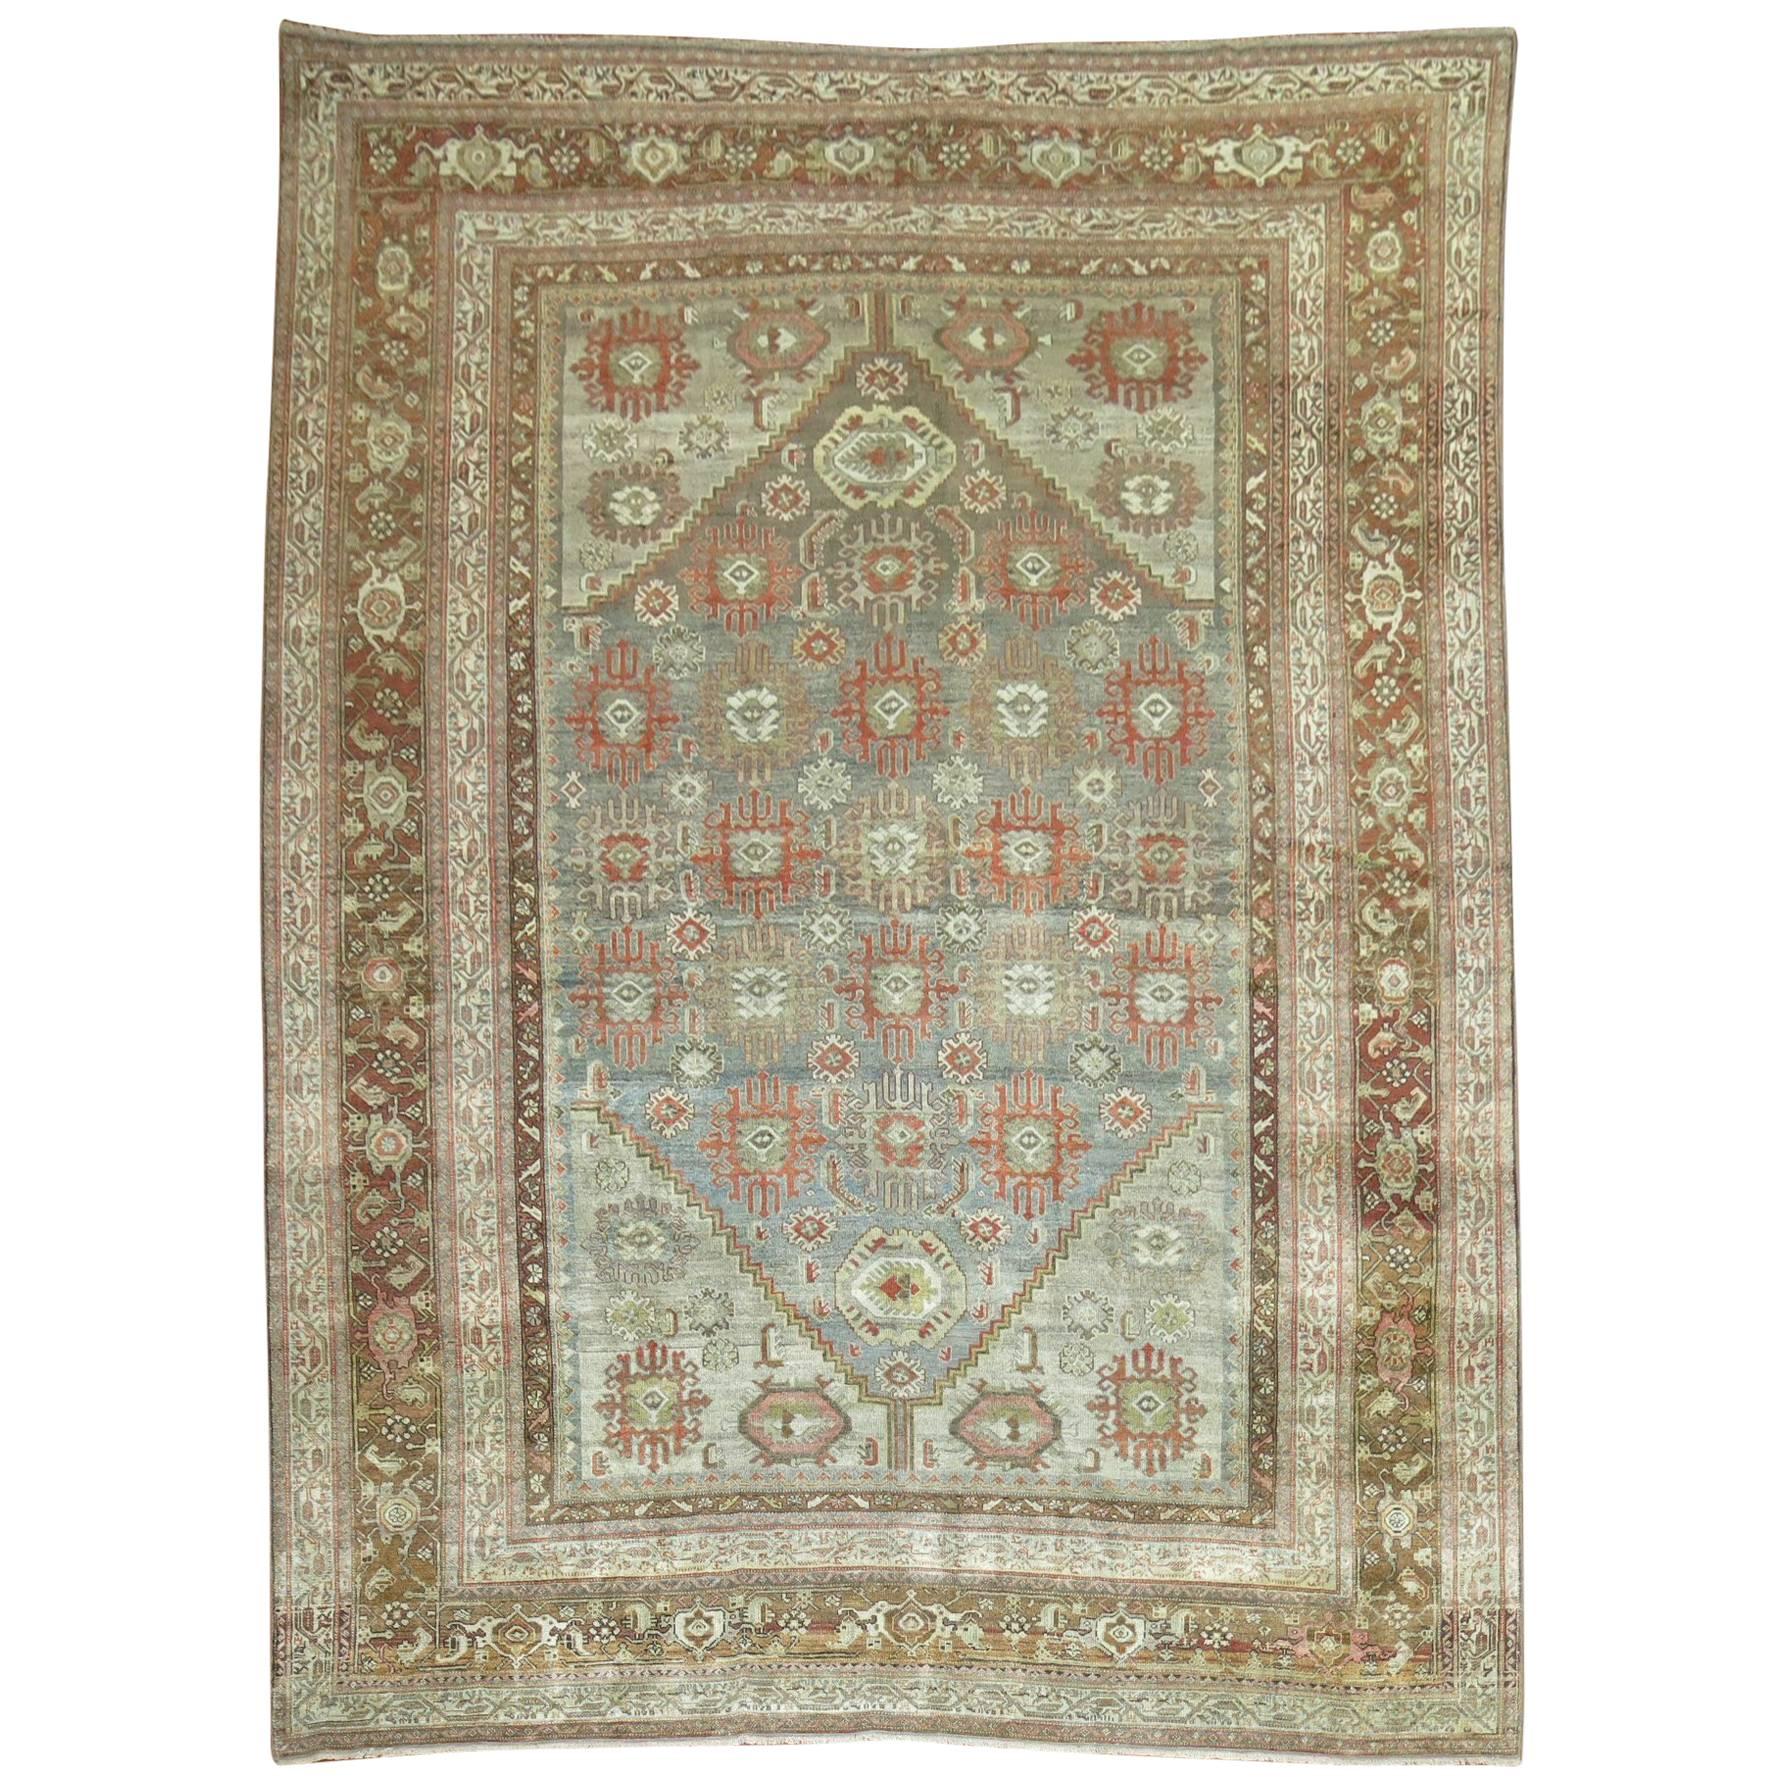 Antique Persian Malayer Decorative Carpet in  Predominant Silver Color